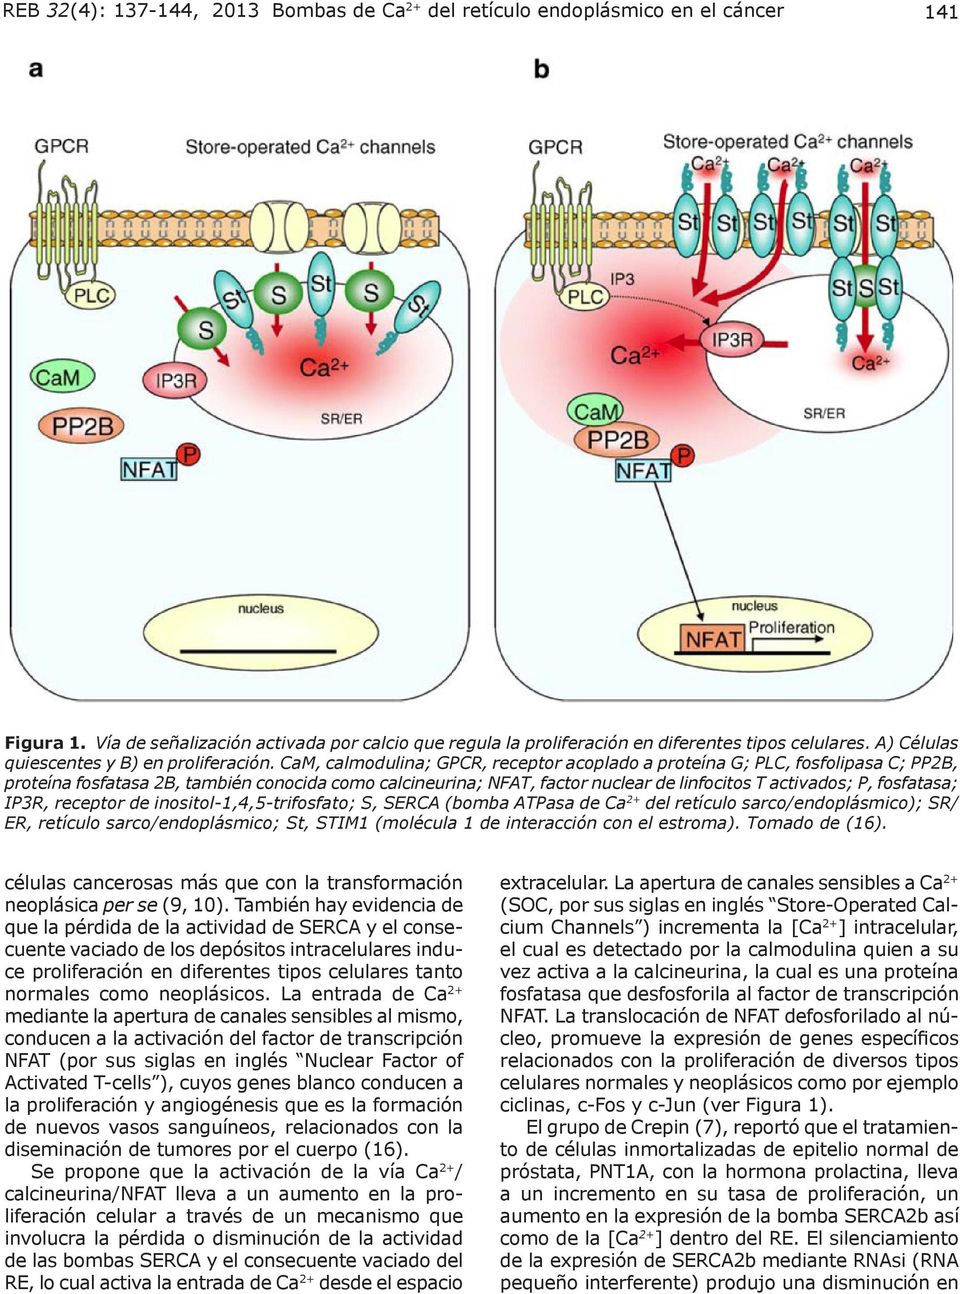 CaM, calmodulina; GPCR, receptor acoplado a proteína G; PLC, fosfolipasa C; PP2B, proteína fosfatasa 2B, también conocida como calcineurina; NFAT, factor nuclear de linfocitos T activados; P,